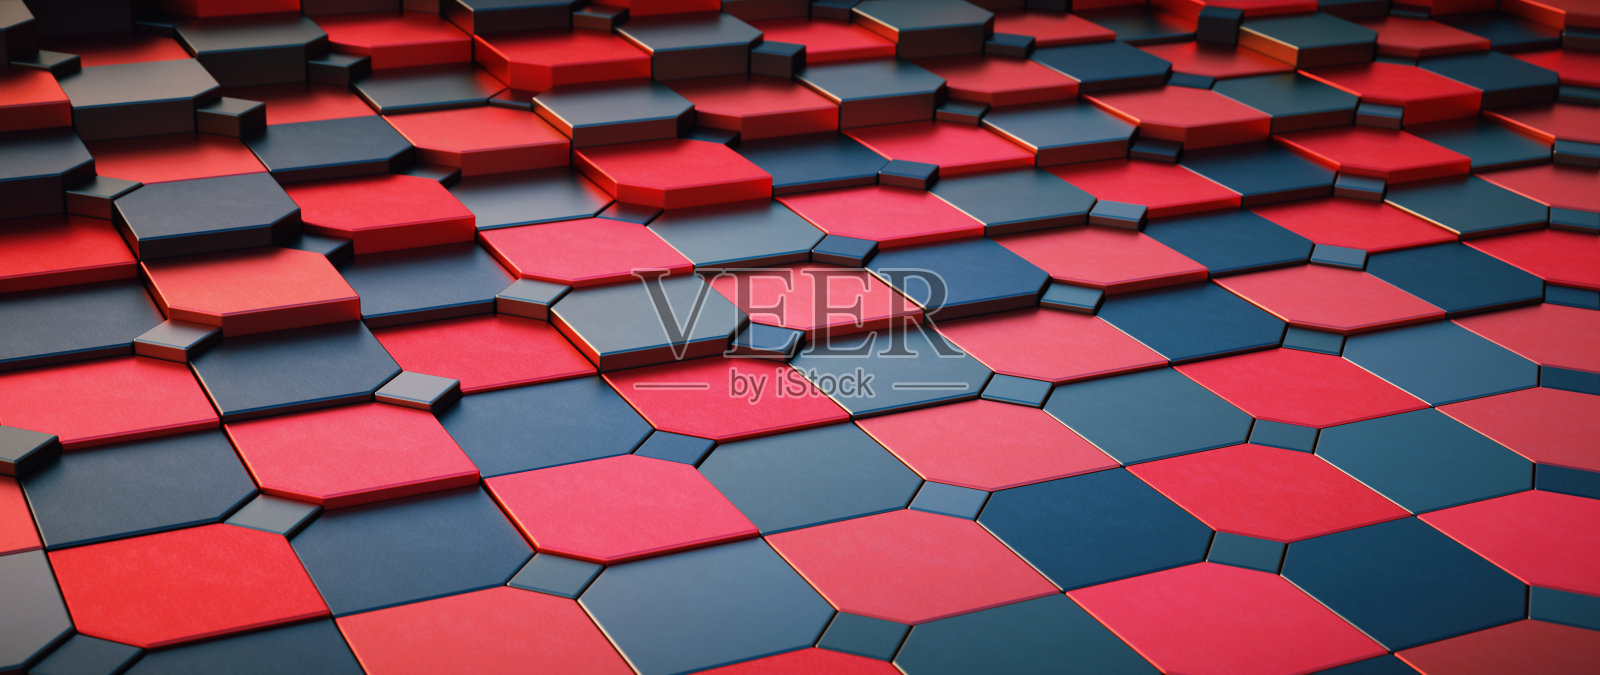 彩色的红色和黑色方形马赛克地板在不均匀的格子图案-低角度表面透视照片摄影图片